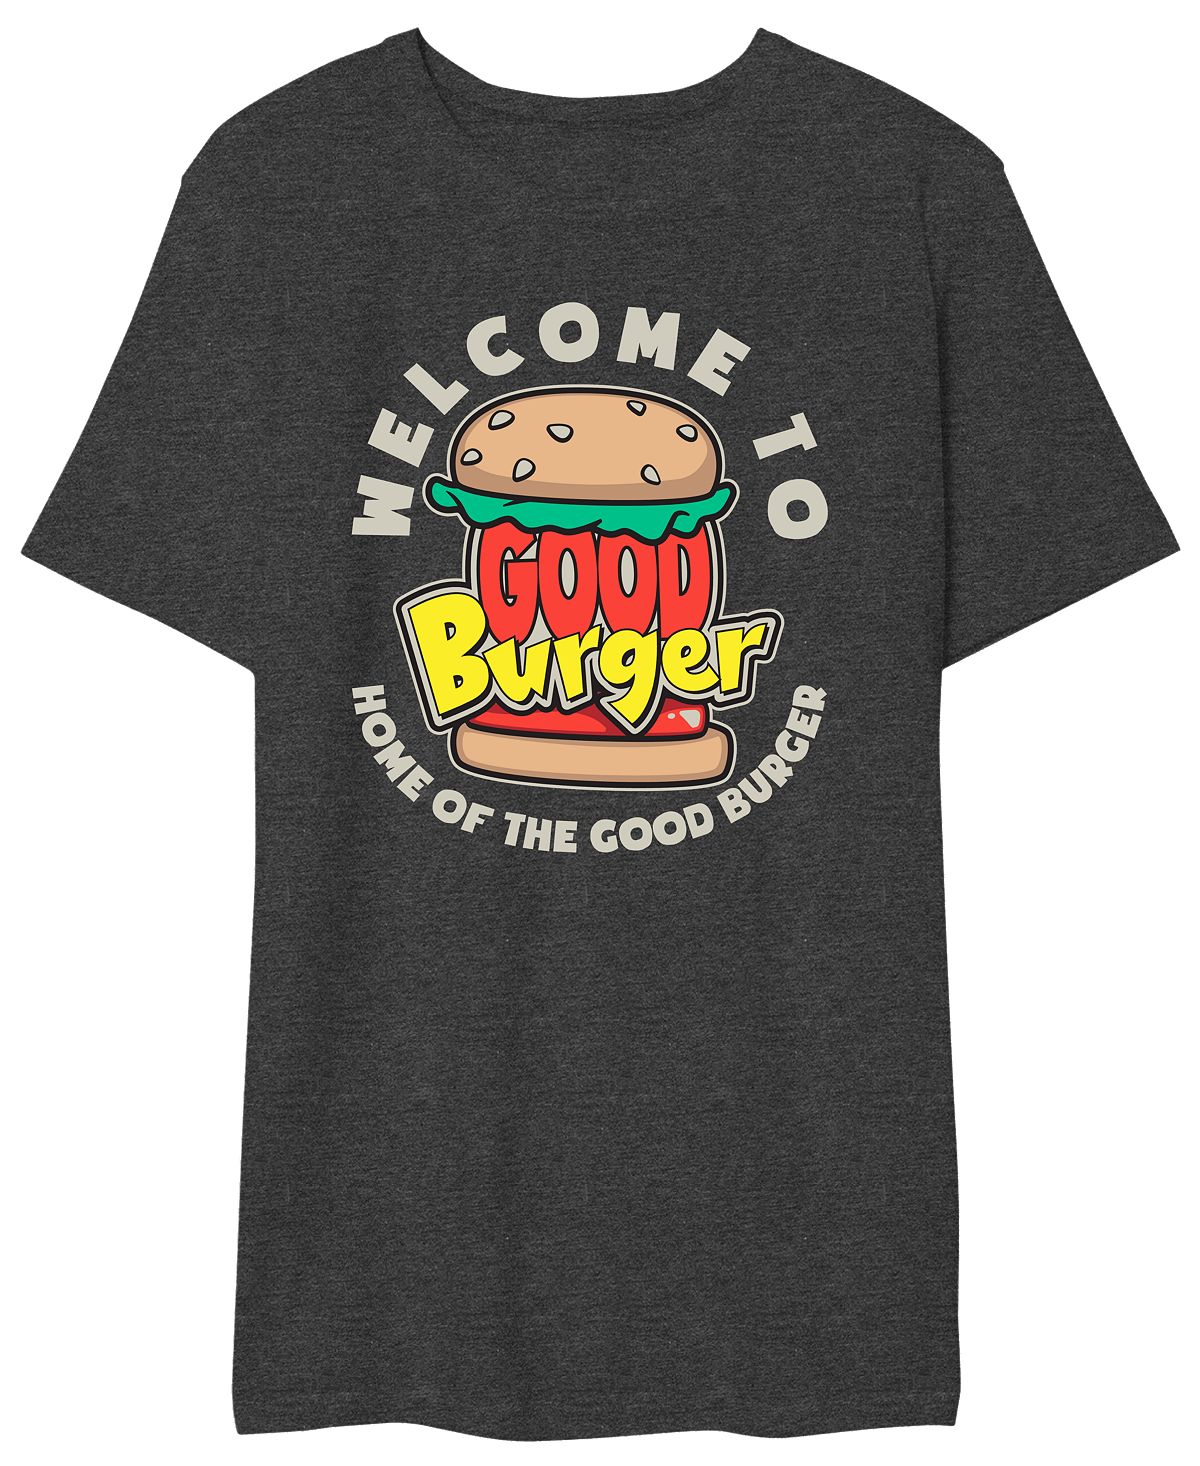 Мужская футболка с надписью good burger добро пожаловать в good burger AIRWAVES, мульти